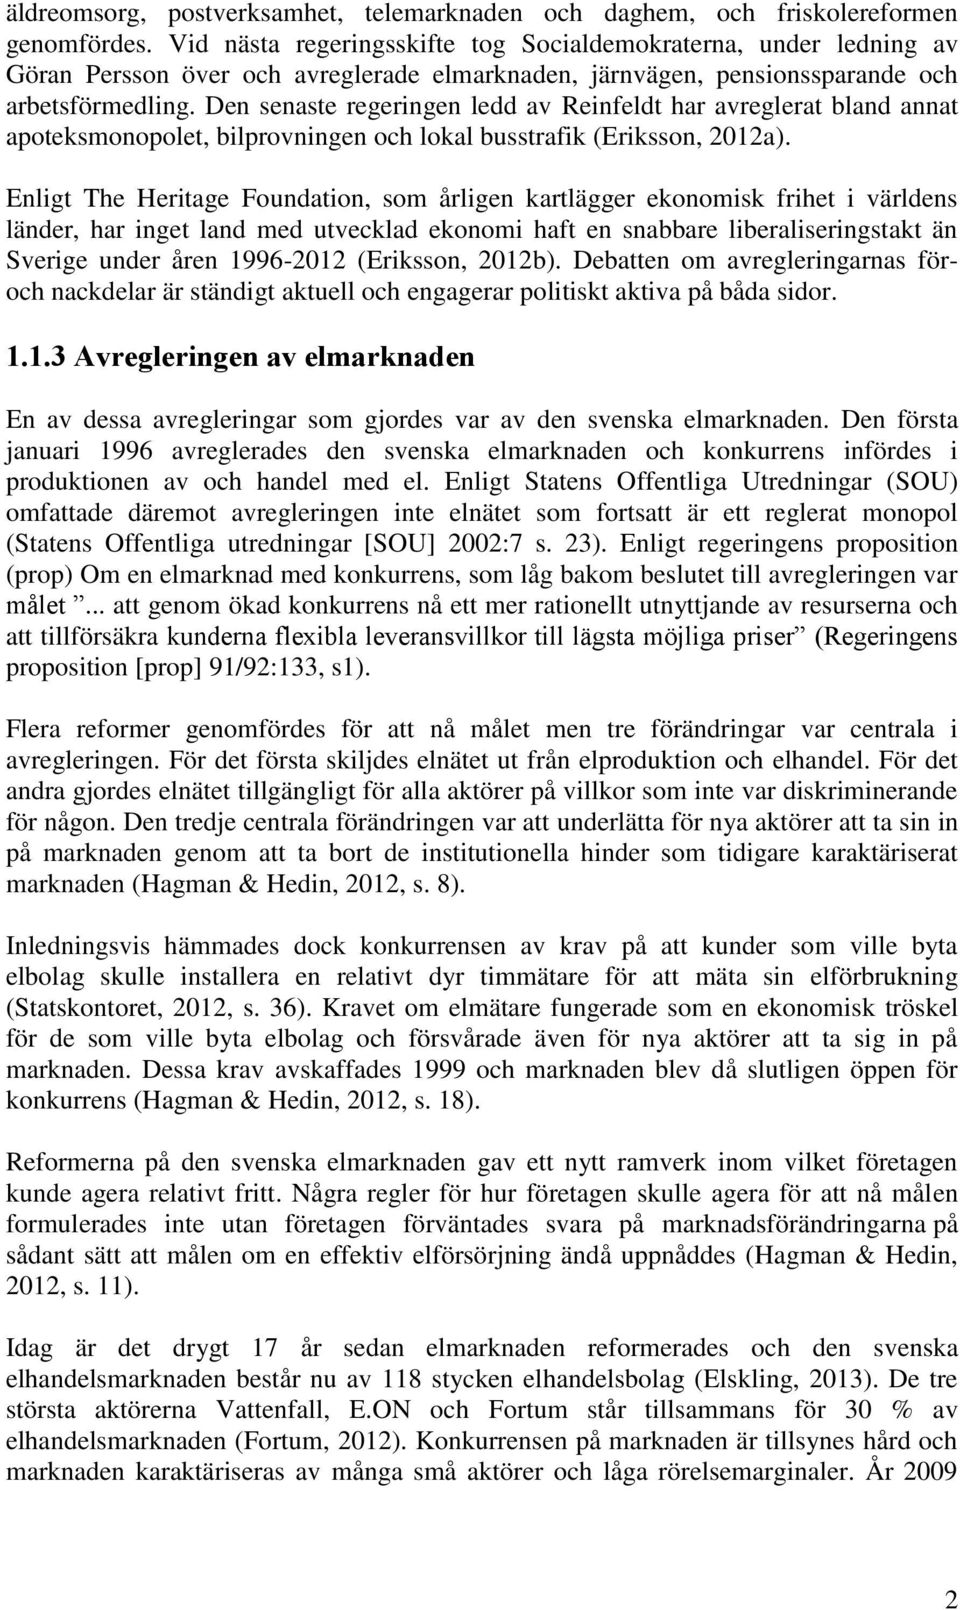 Den senaste regeringen ledd av Reinfeldt har avreglerat bland annat apoteksmonopolet, bilprovningen och lokal busstrafik (Eriksson, 2012a).